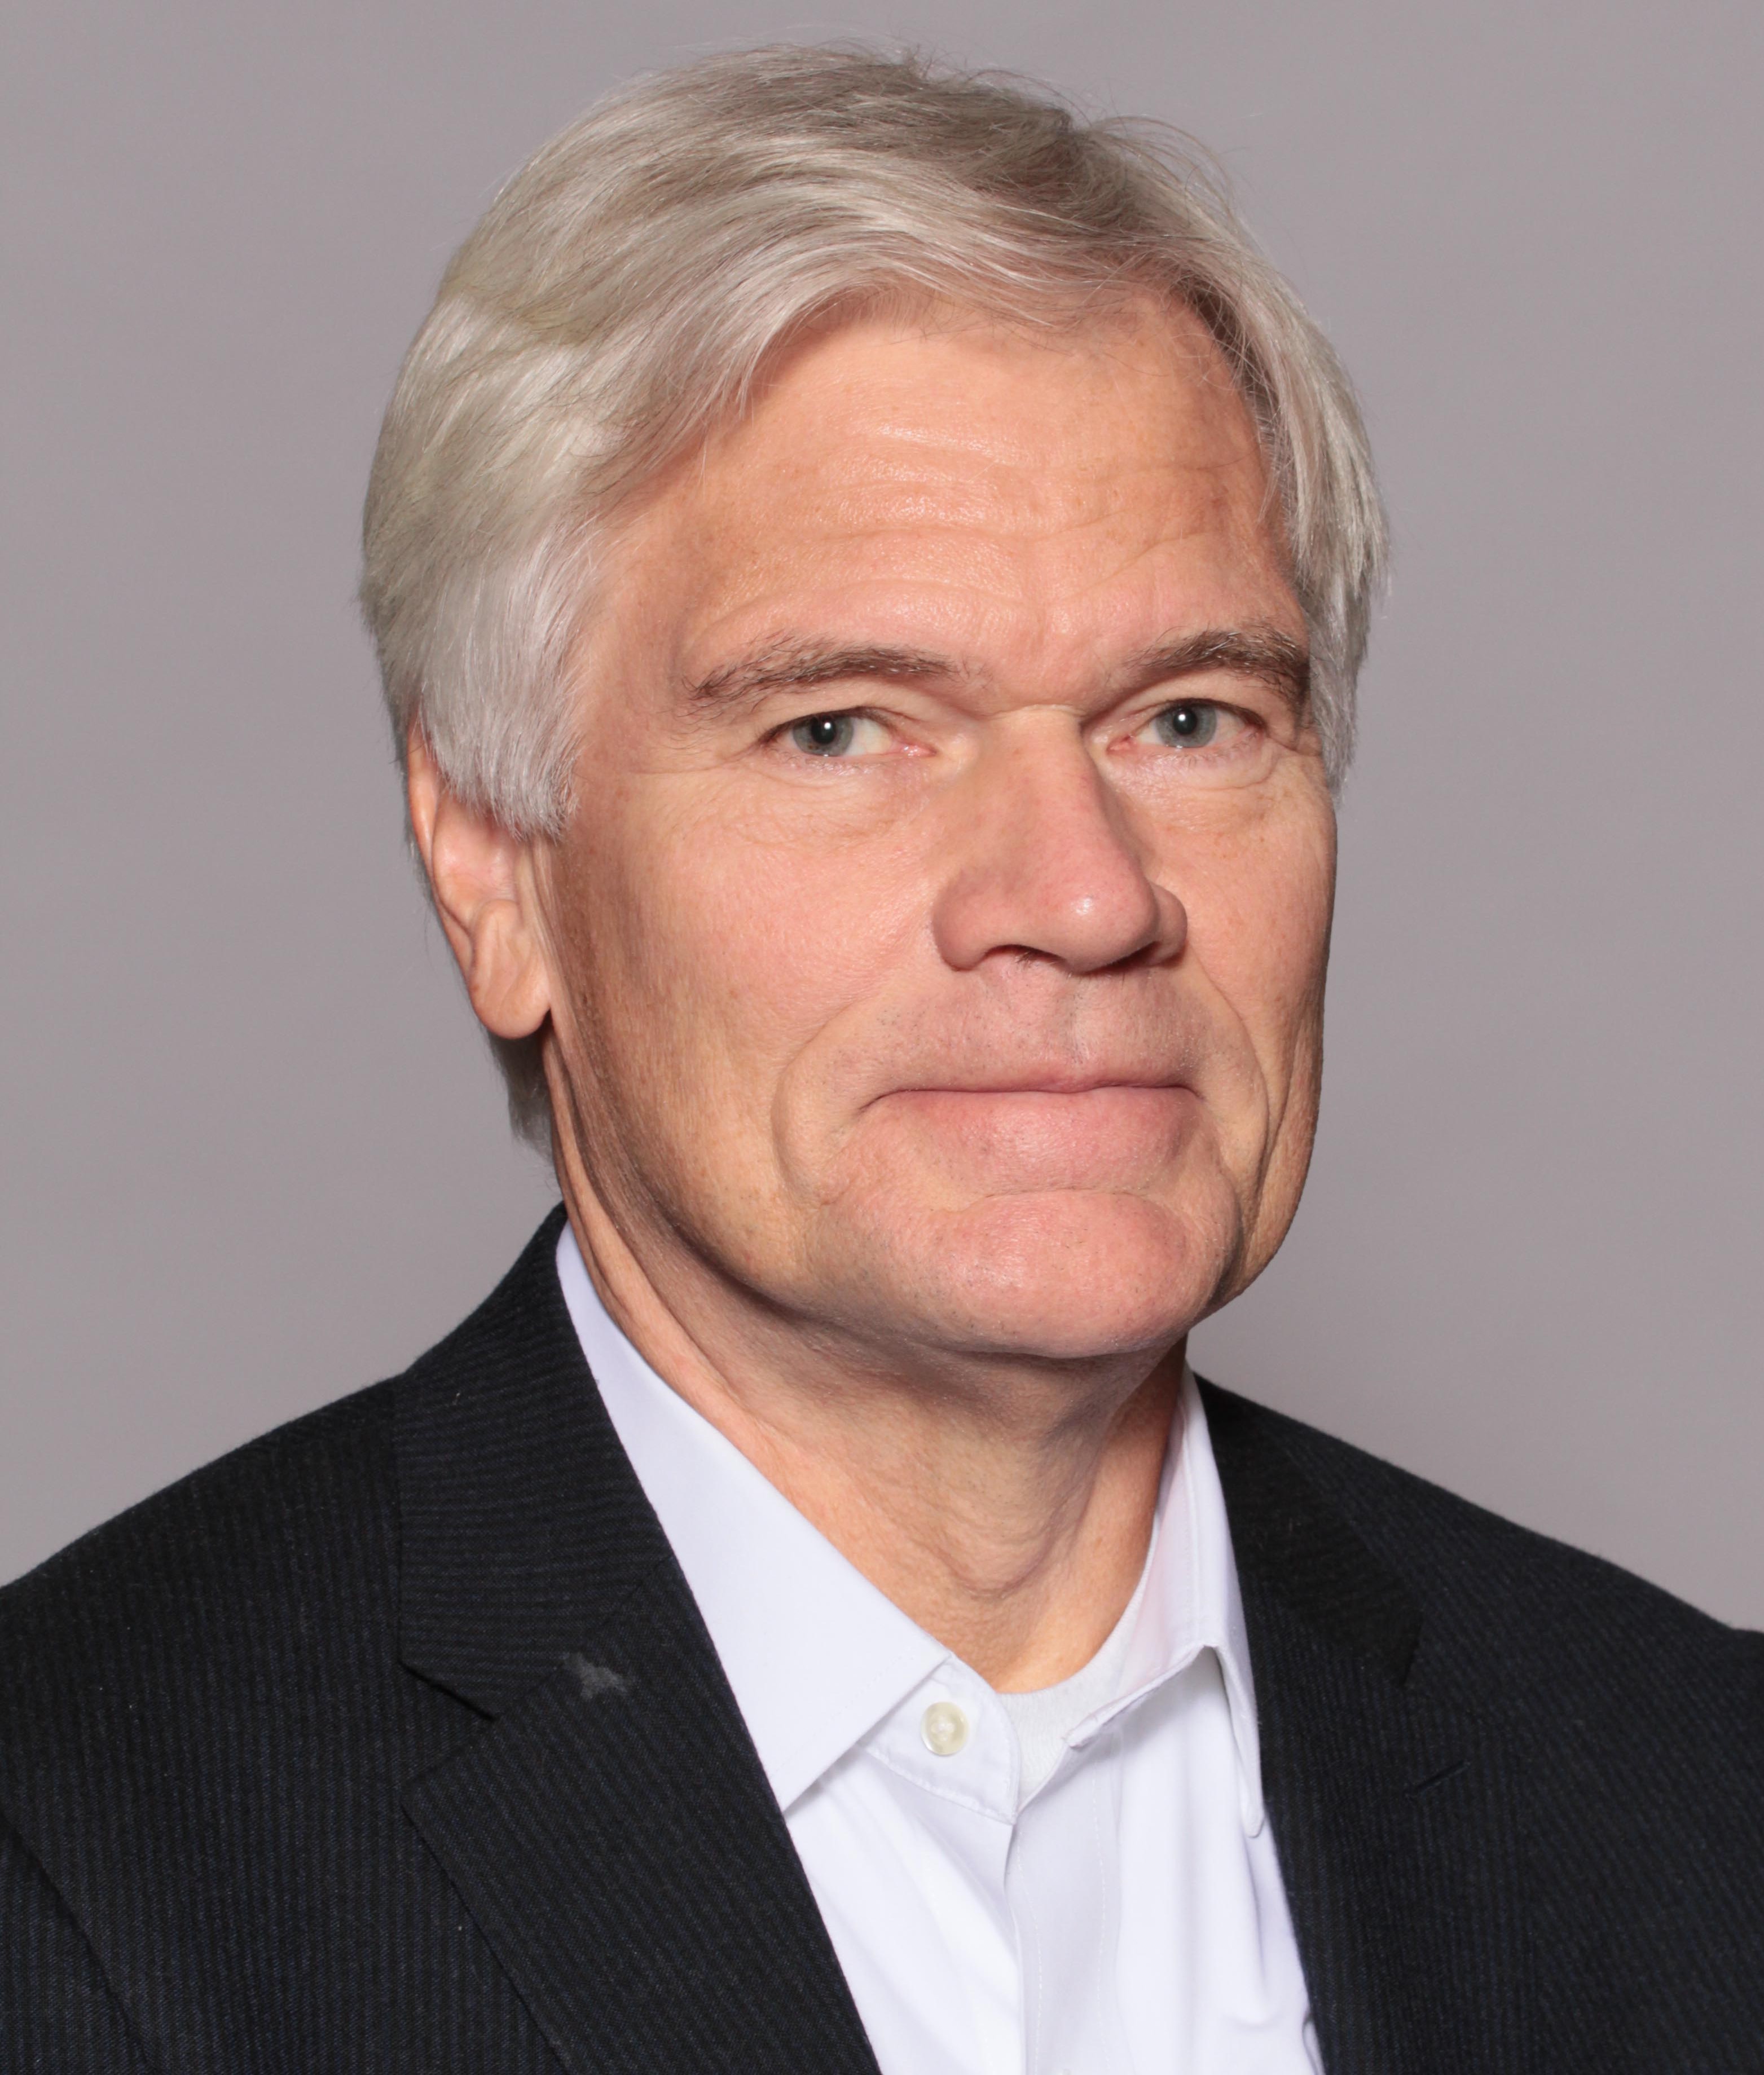 Hans Grahn, PhD, CTO